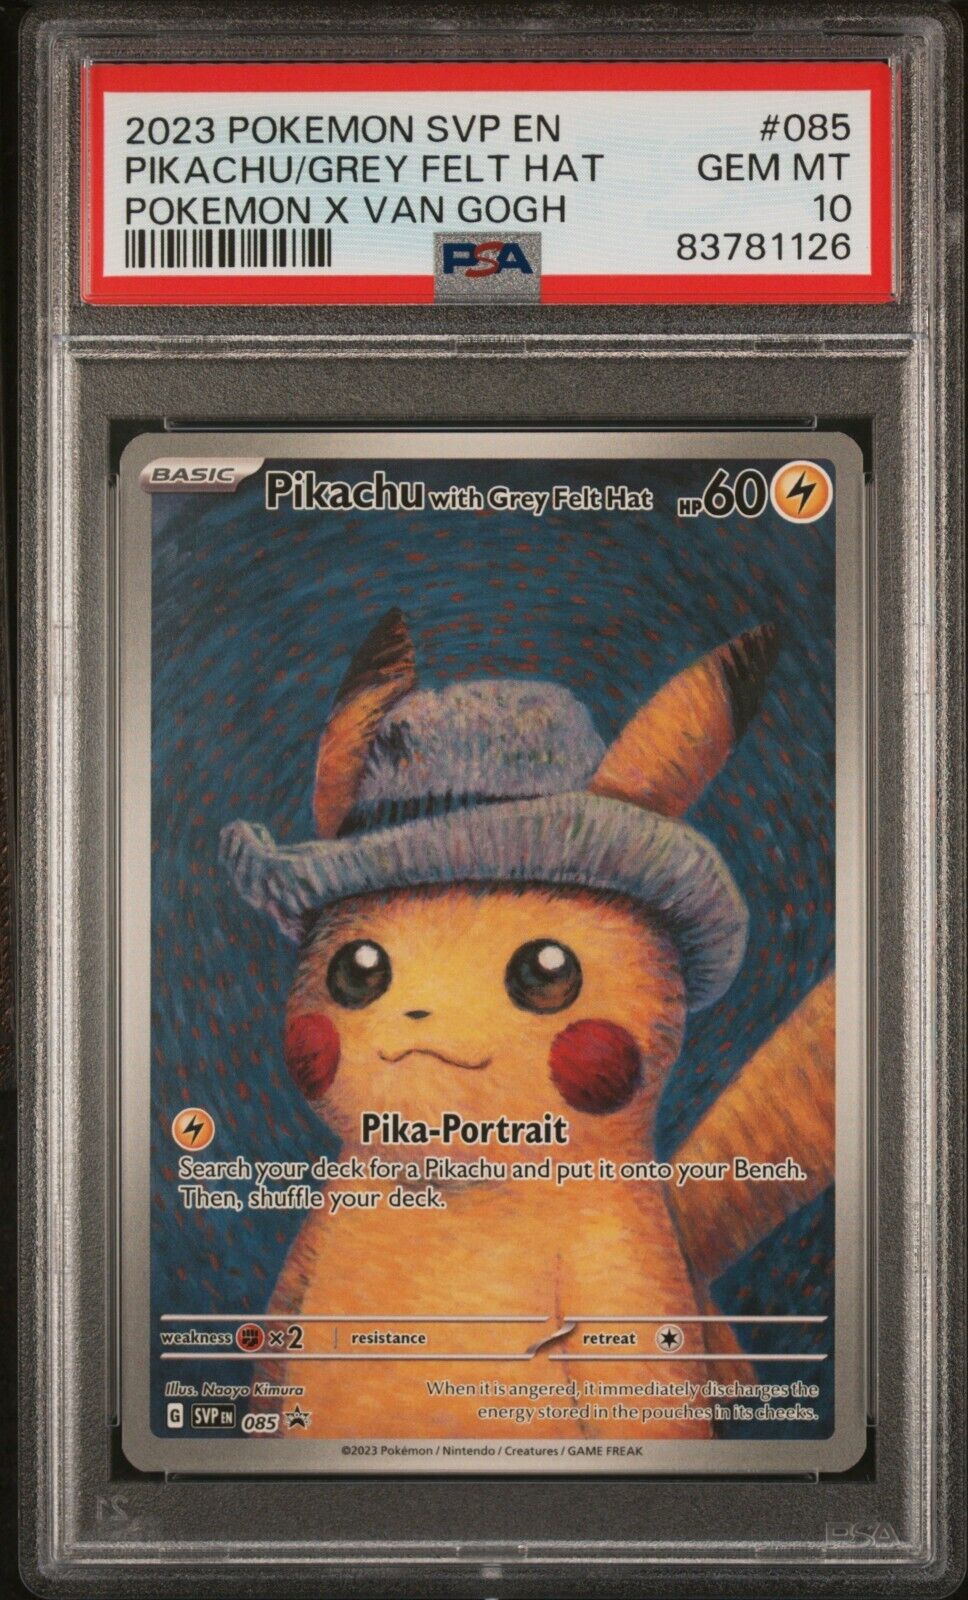 2023 Pokmon x Van Gogh Pikachu Grey Felt Hat 085 Promo PSA 10